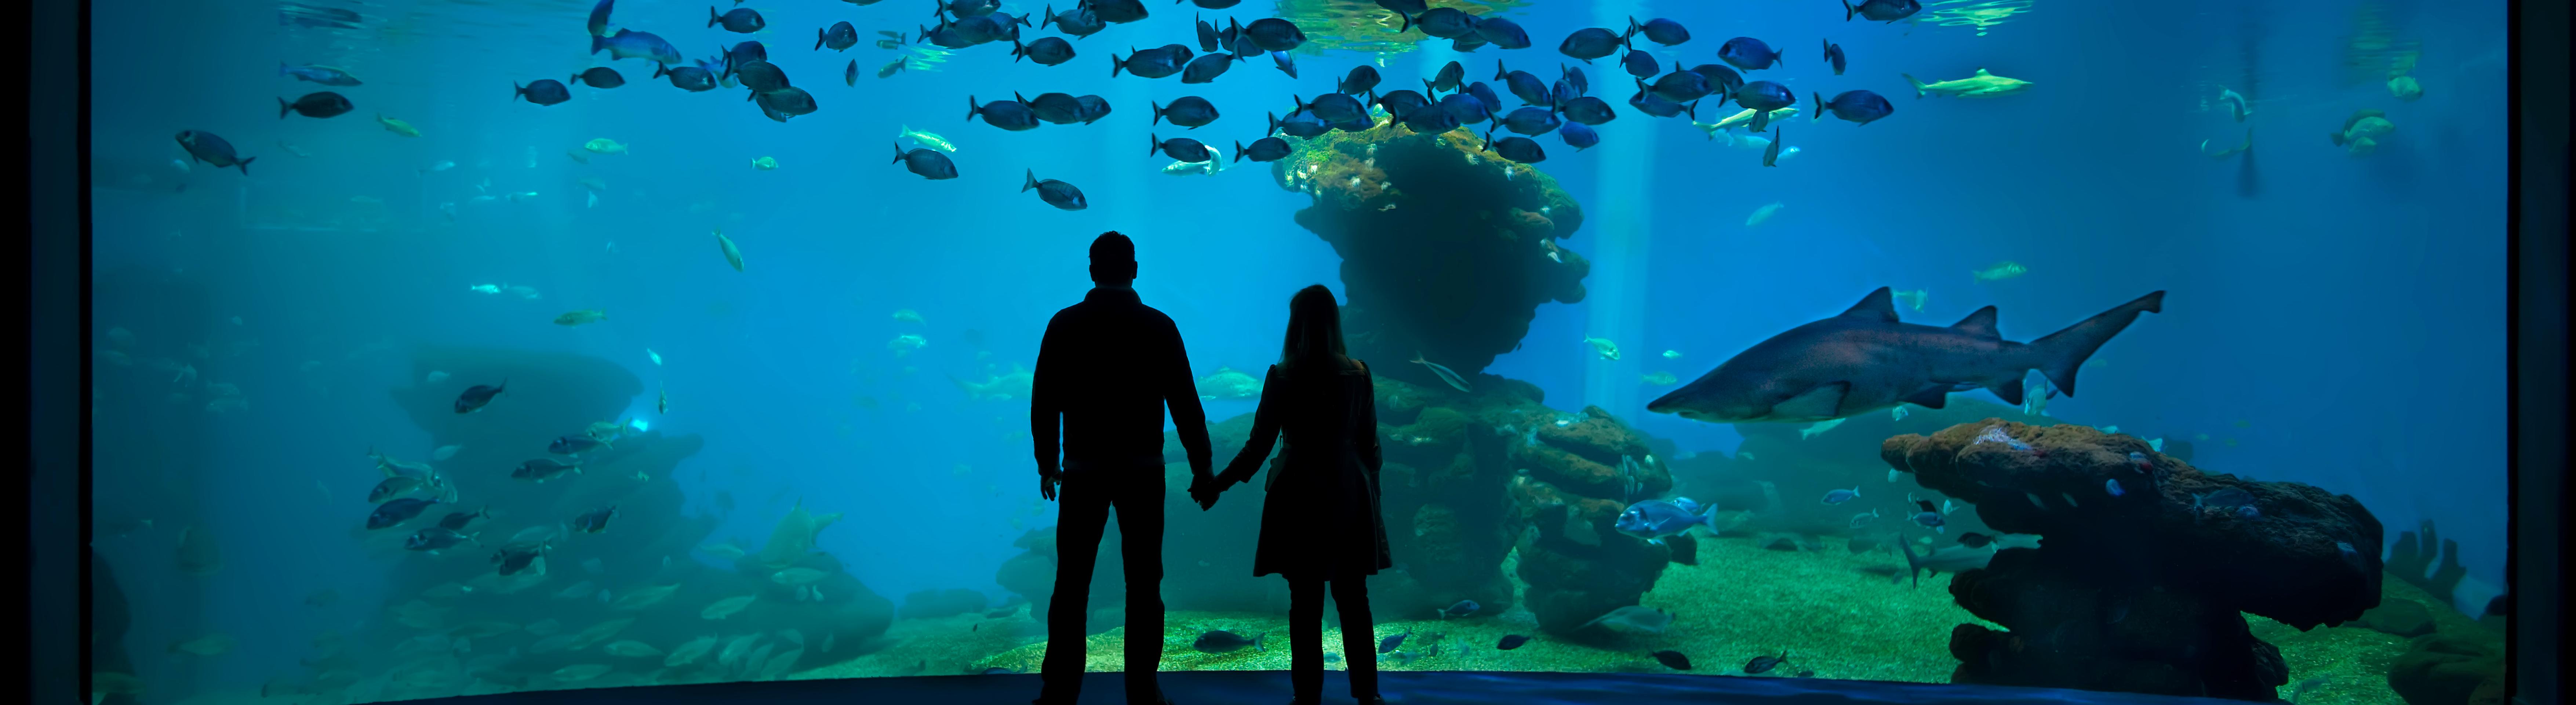 Journée à Palma Aquarium – transferts inclus